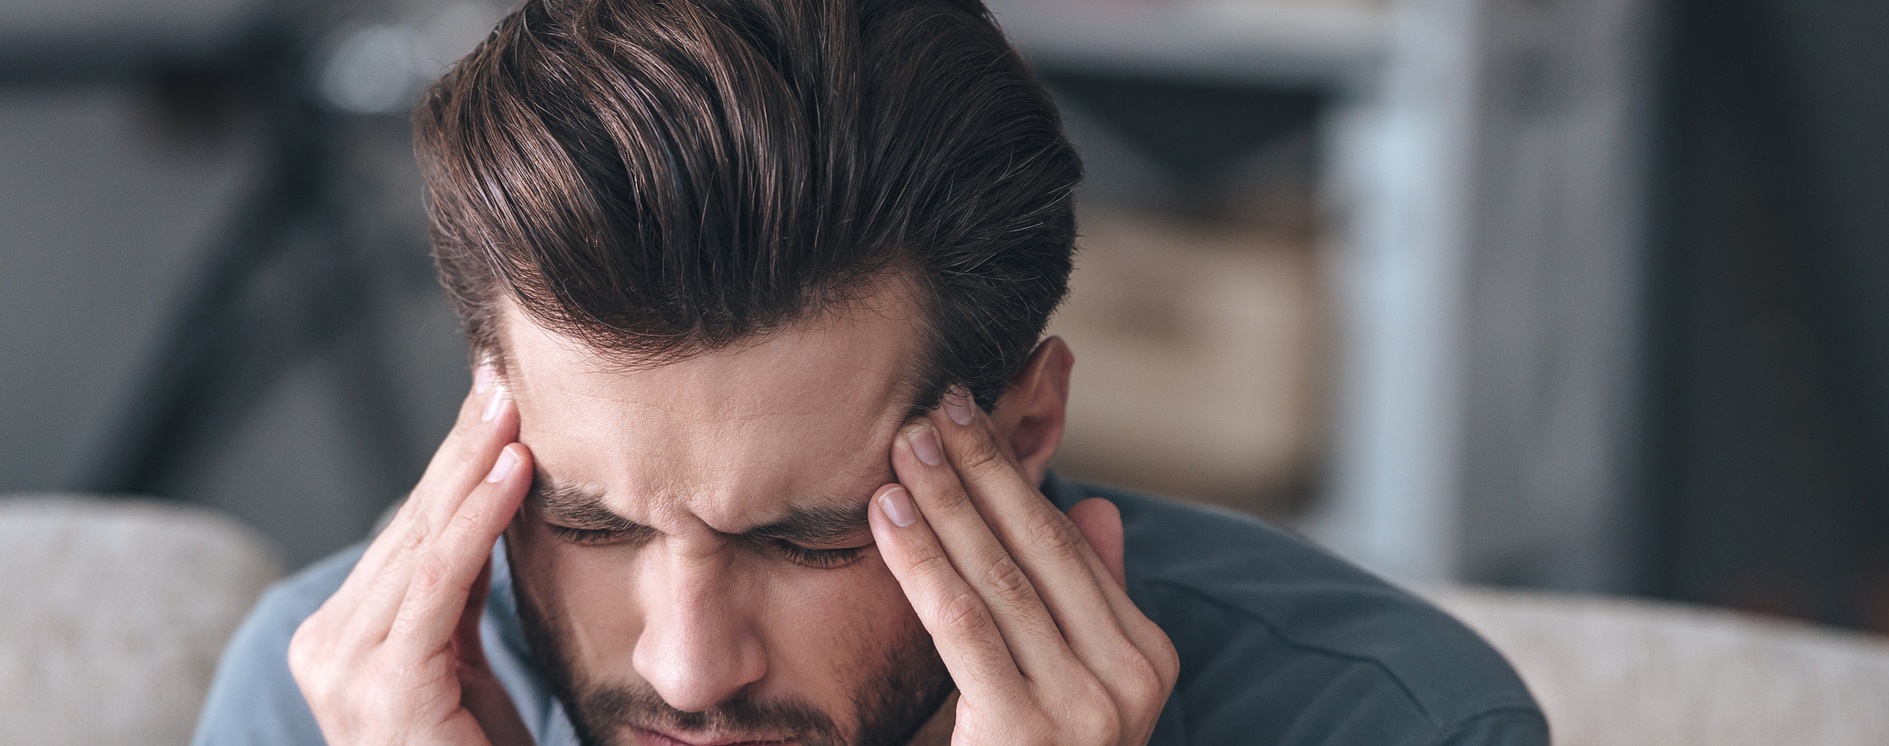 ¿Hay que alarmarse ante un dolor de cabeza?